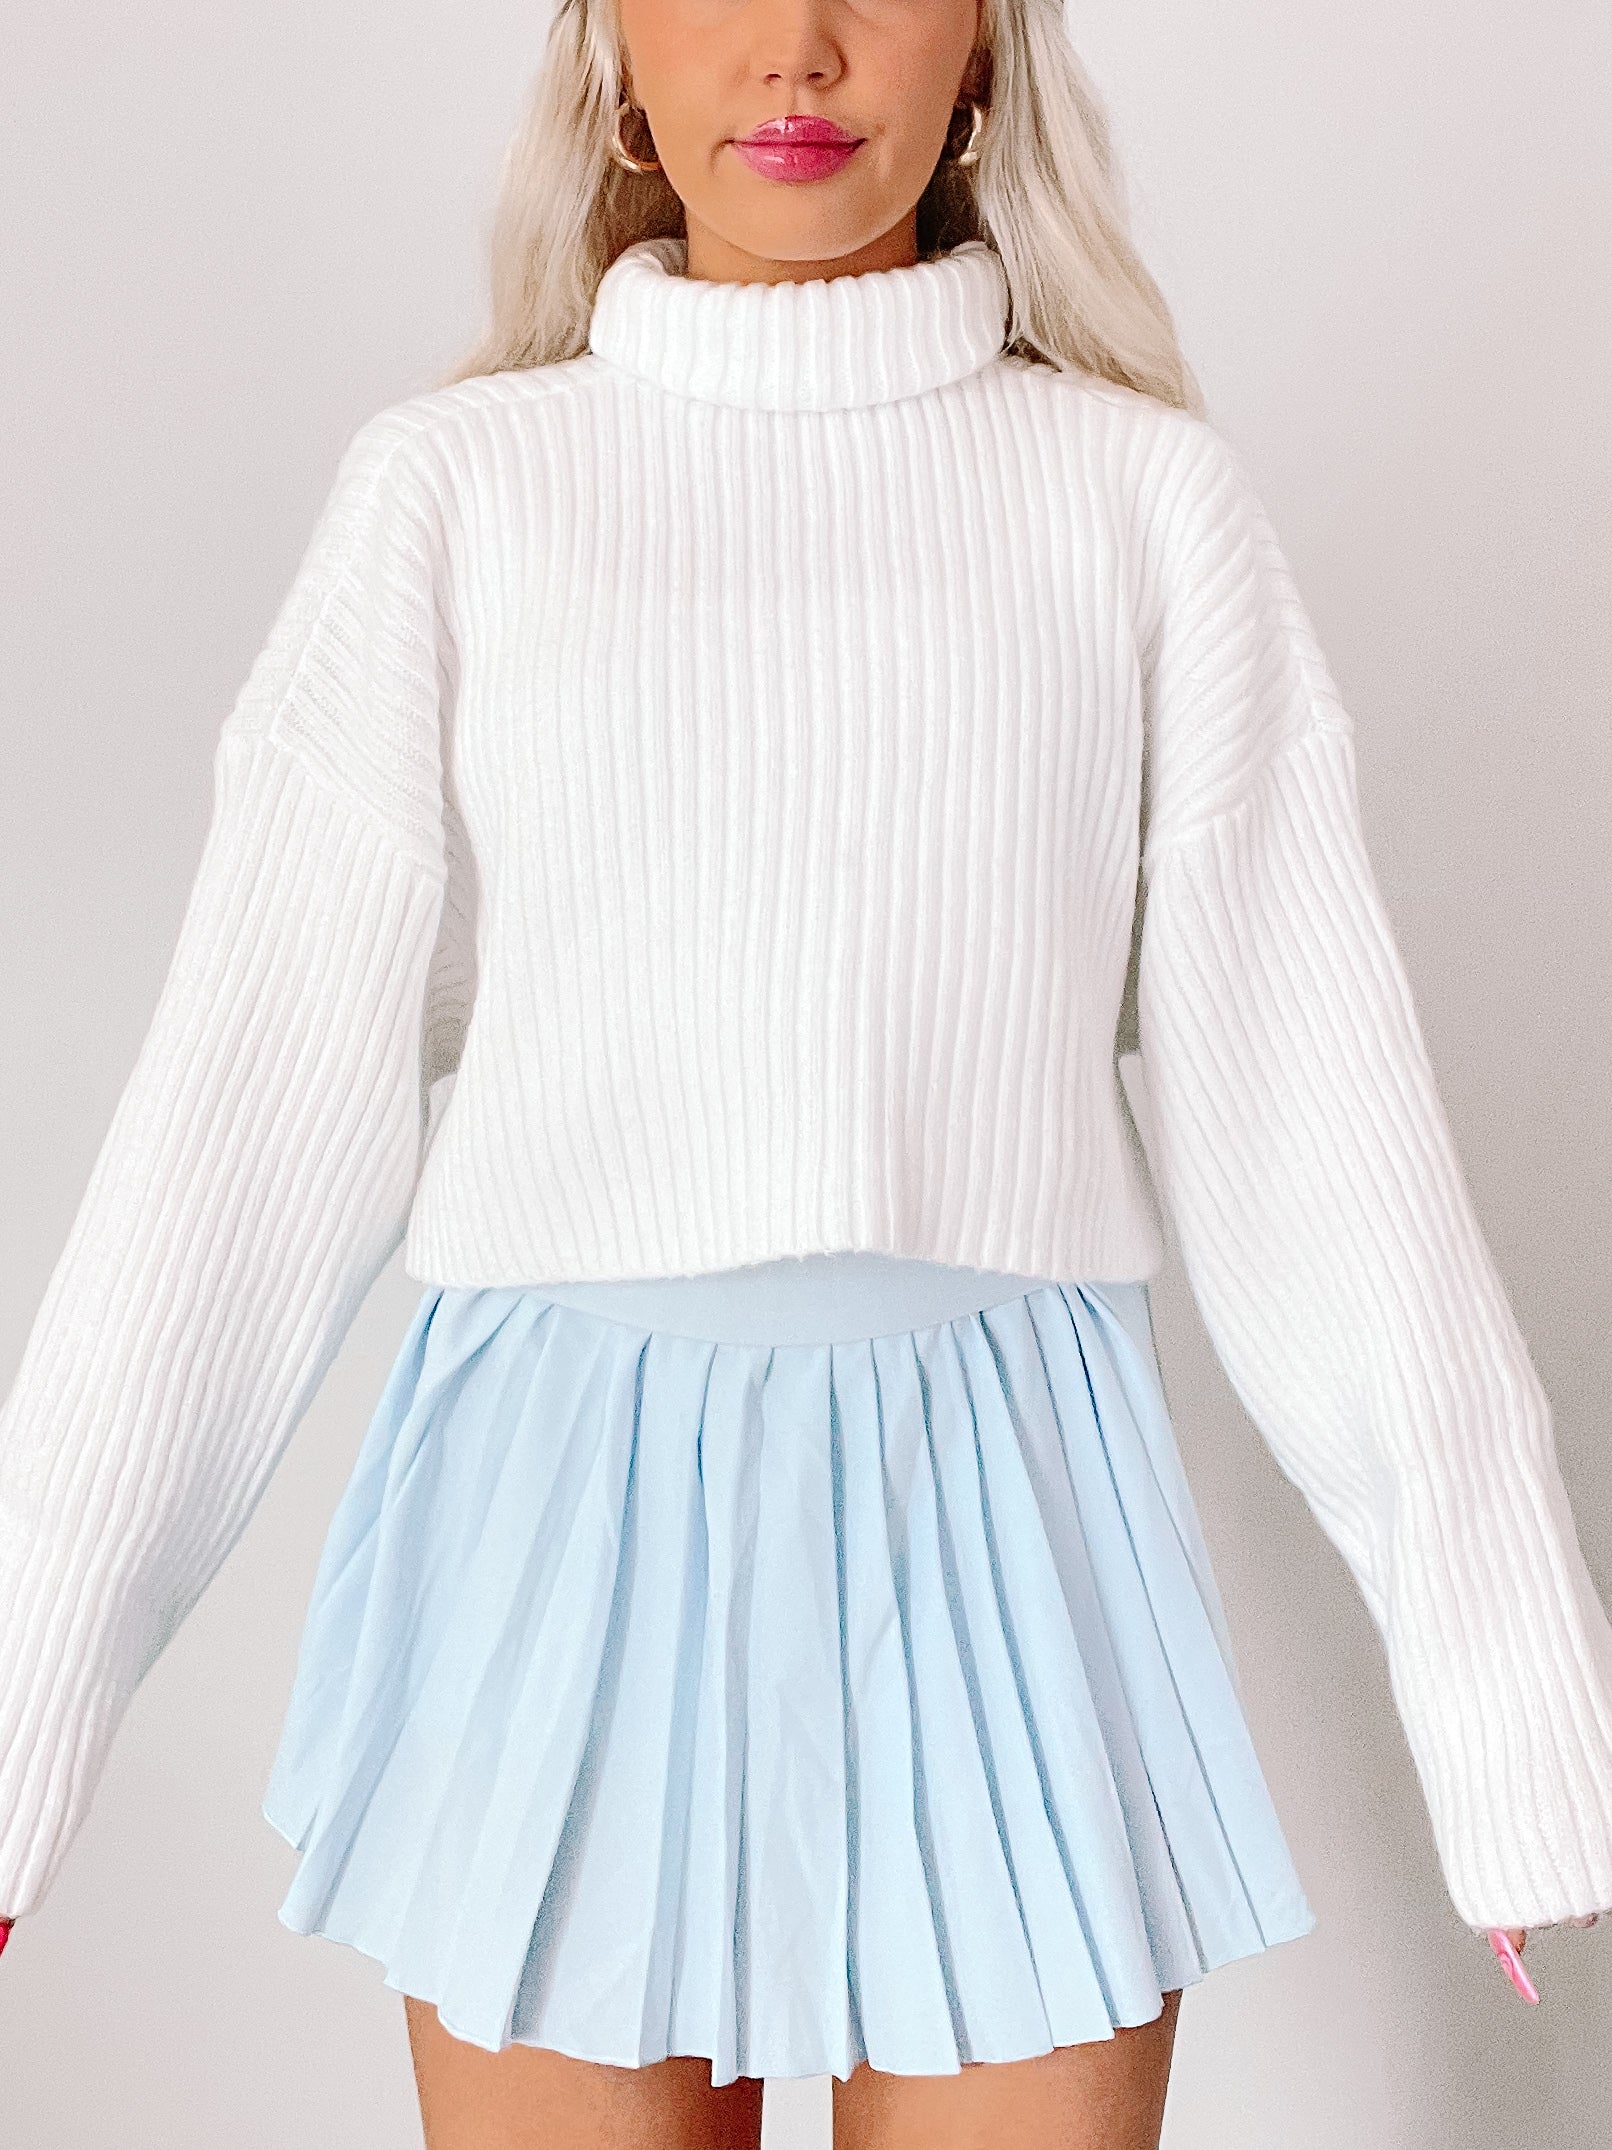 Sydney Cropped White Turtleneck Sweater | Sassy Shortcake | sassyshortcake.com